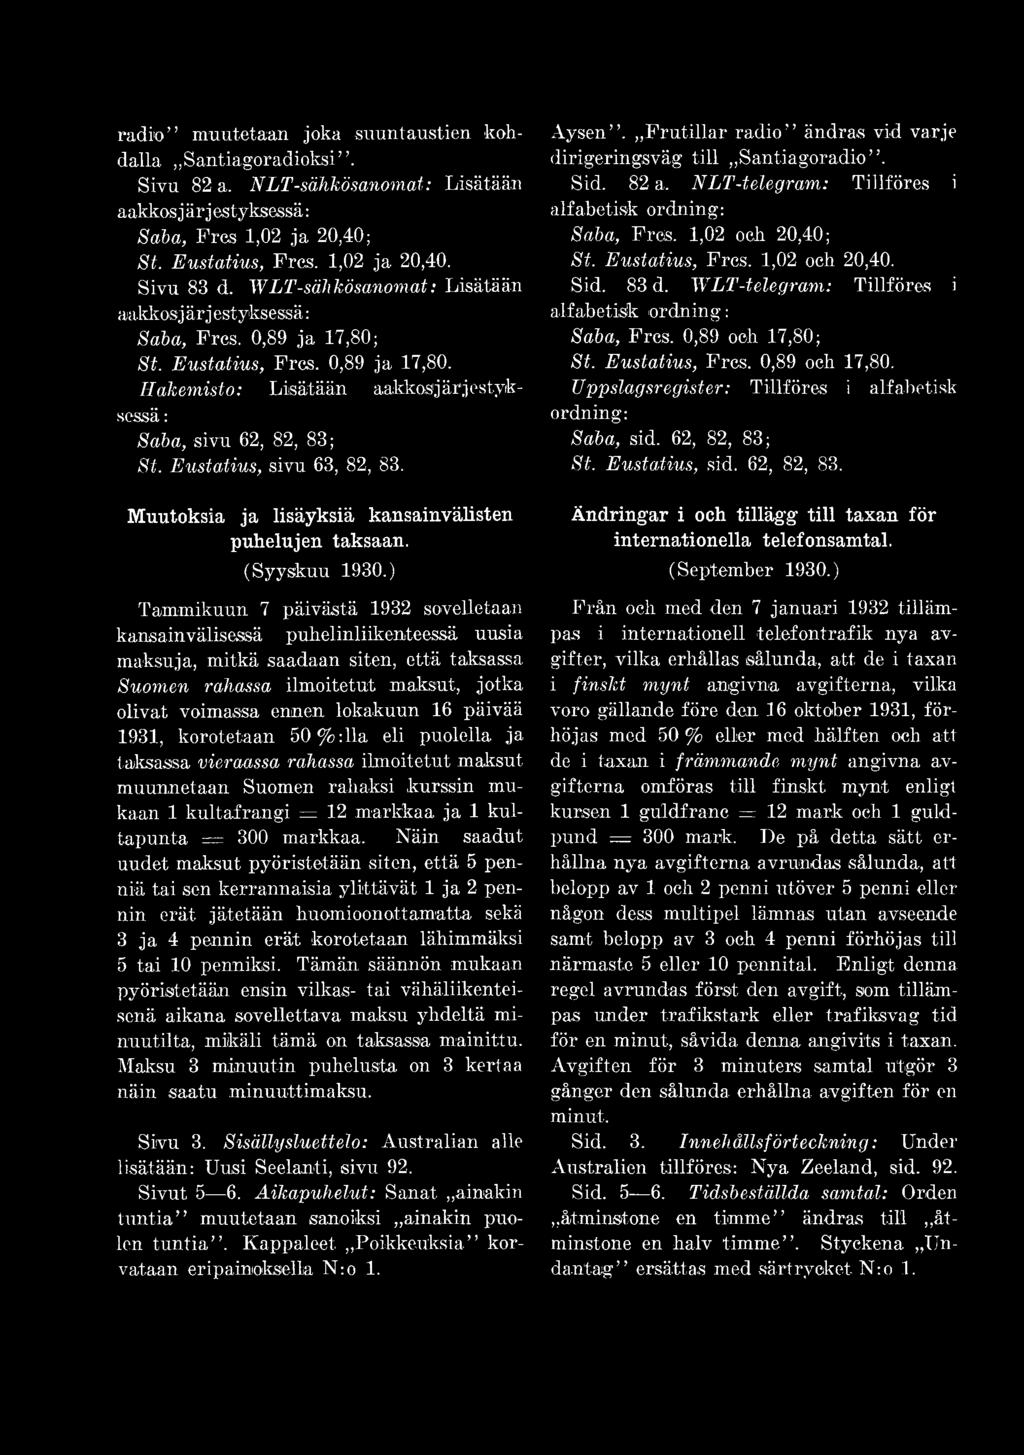 Eustatius, sivu 63, 82, 83. Muutoksia ja lisäyksiä kansainvälisten puhelujen taksaan. (Syyskuu 1930.